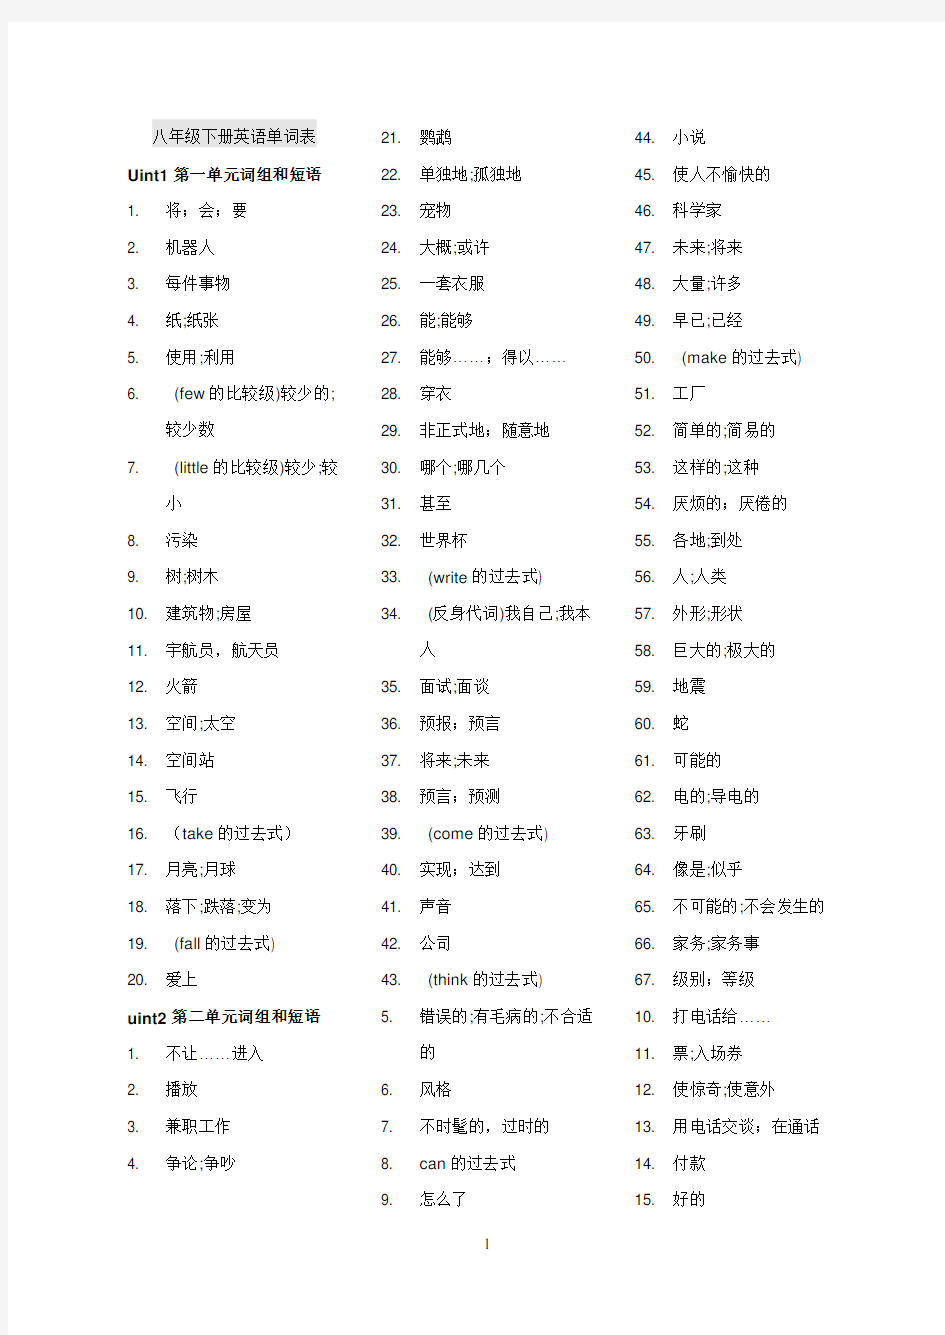 八年级下册英语单词表(中文版)